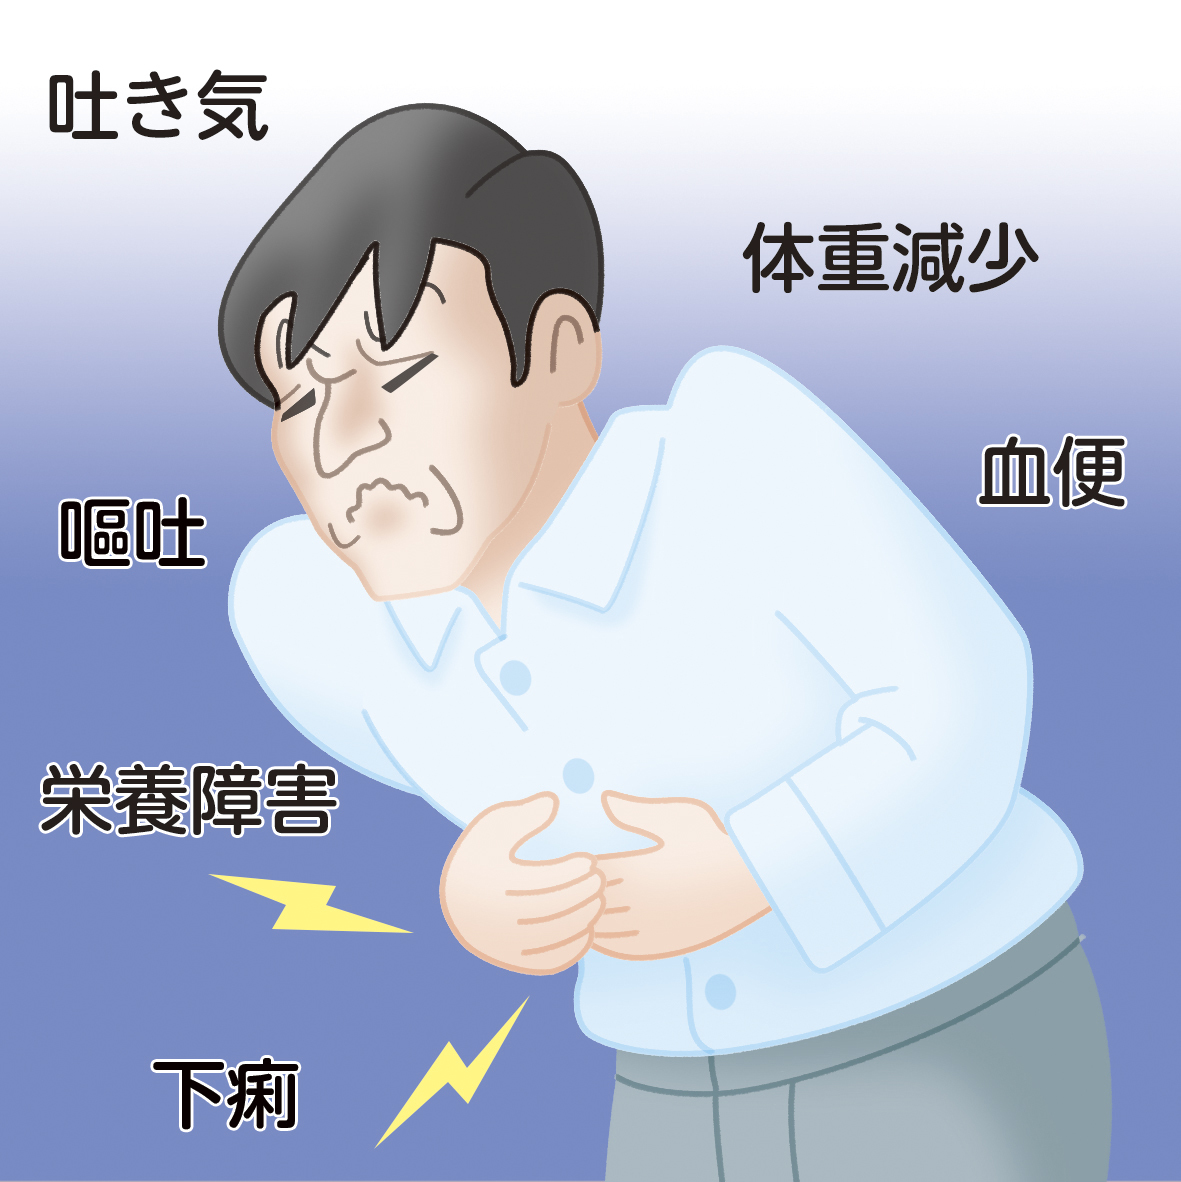 胃や小腸、大腸に好酸球が増加し炎症が起こる